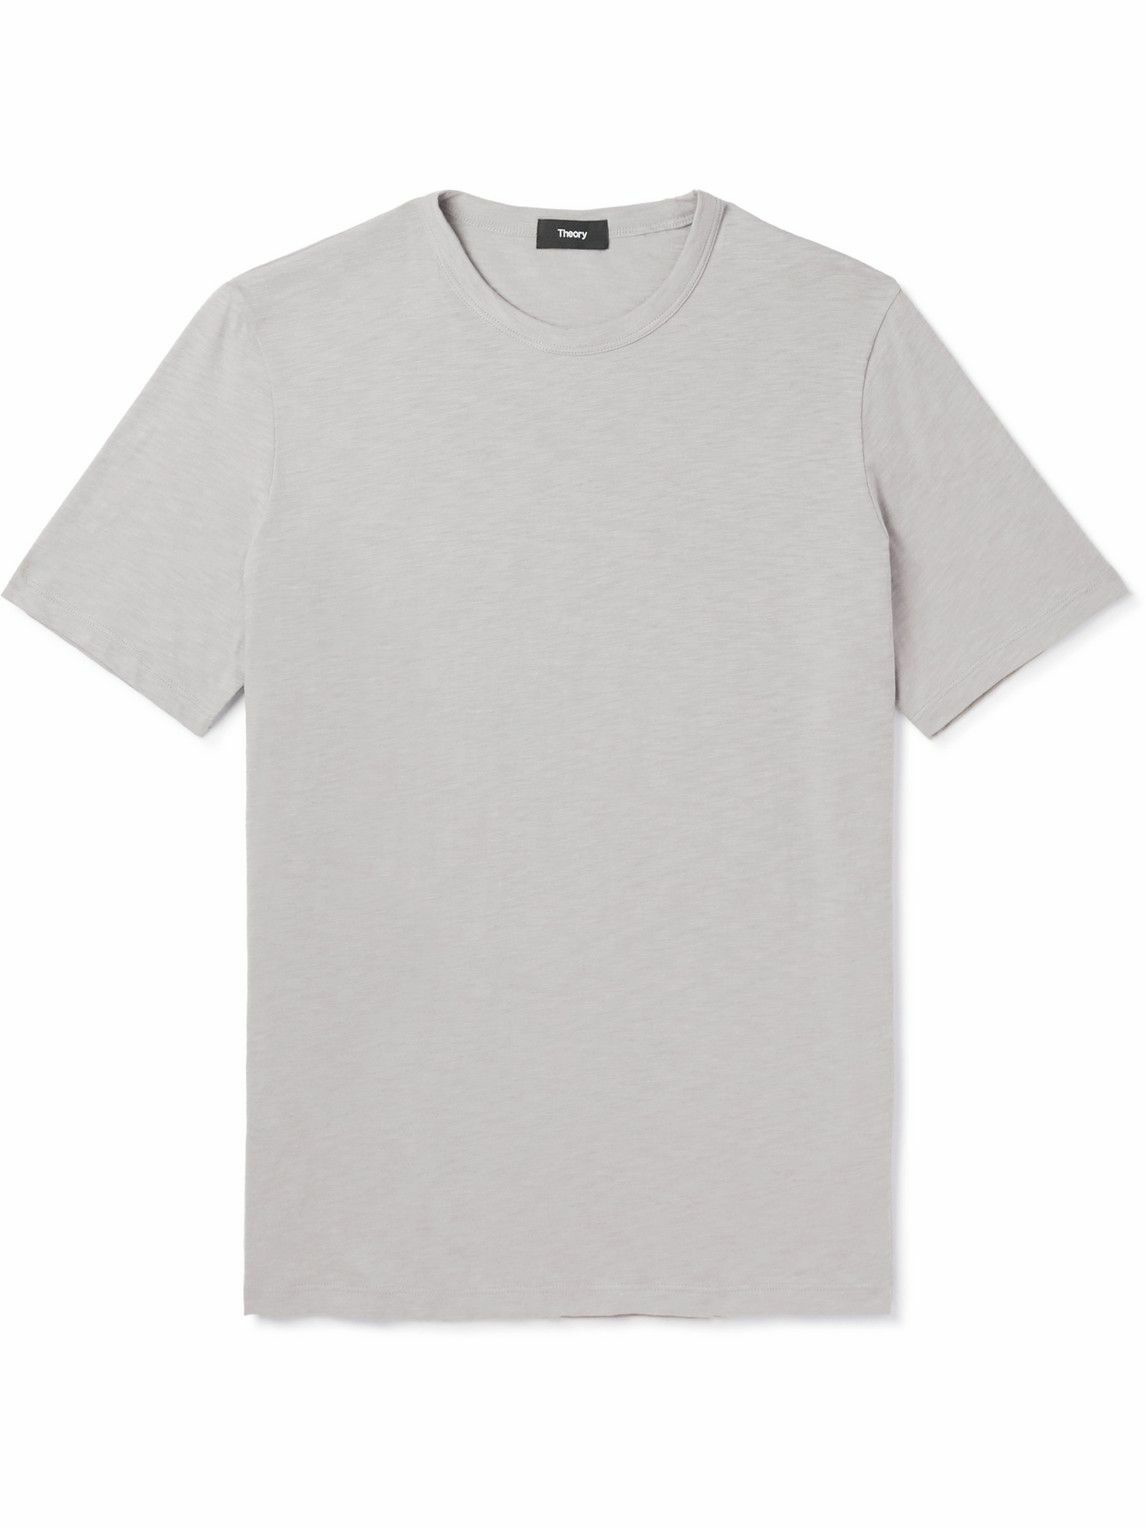 Theory - Cotton-Jersey T-Shirt - Gray Theory